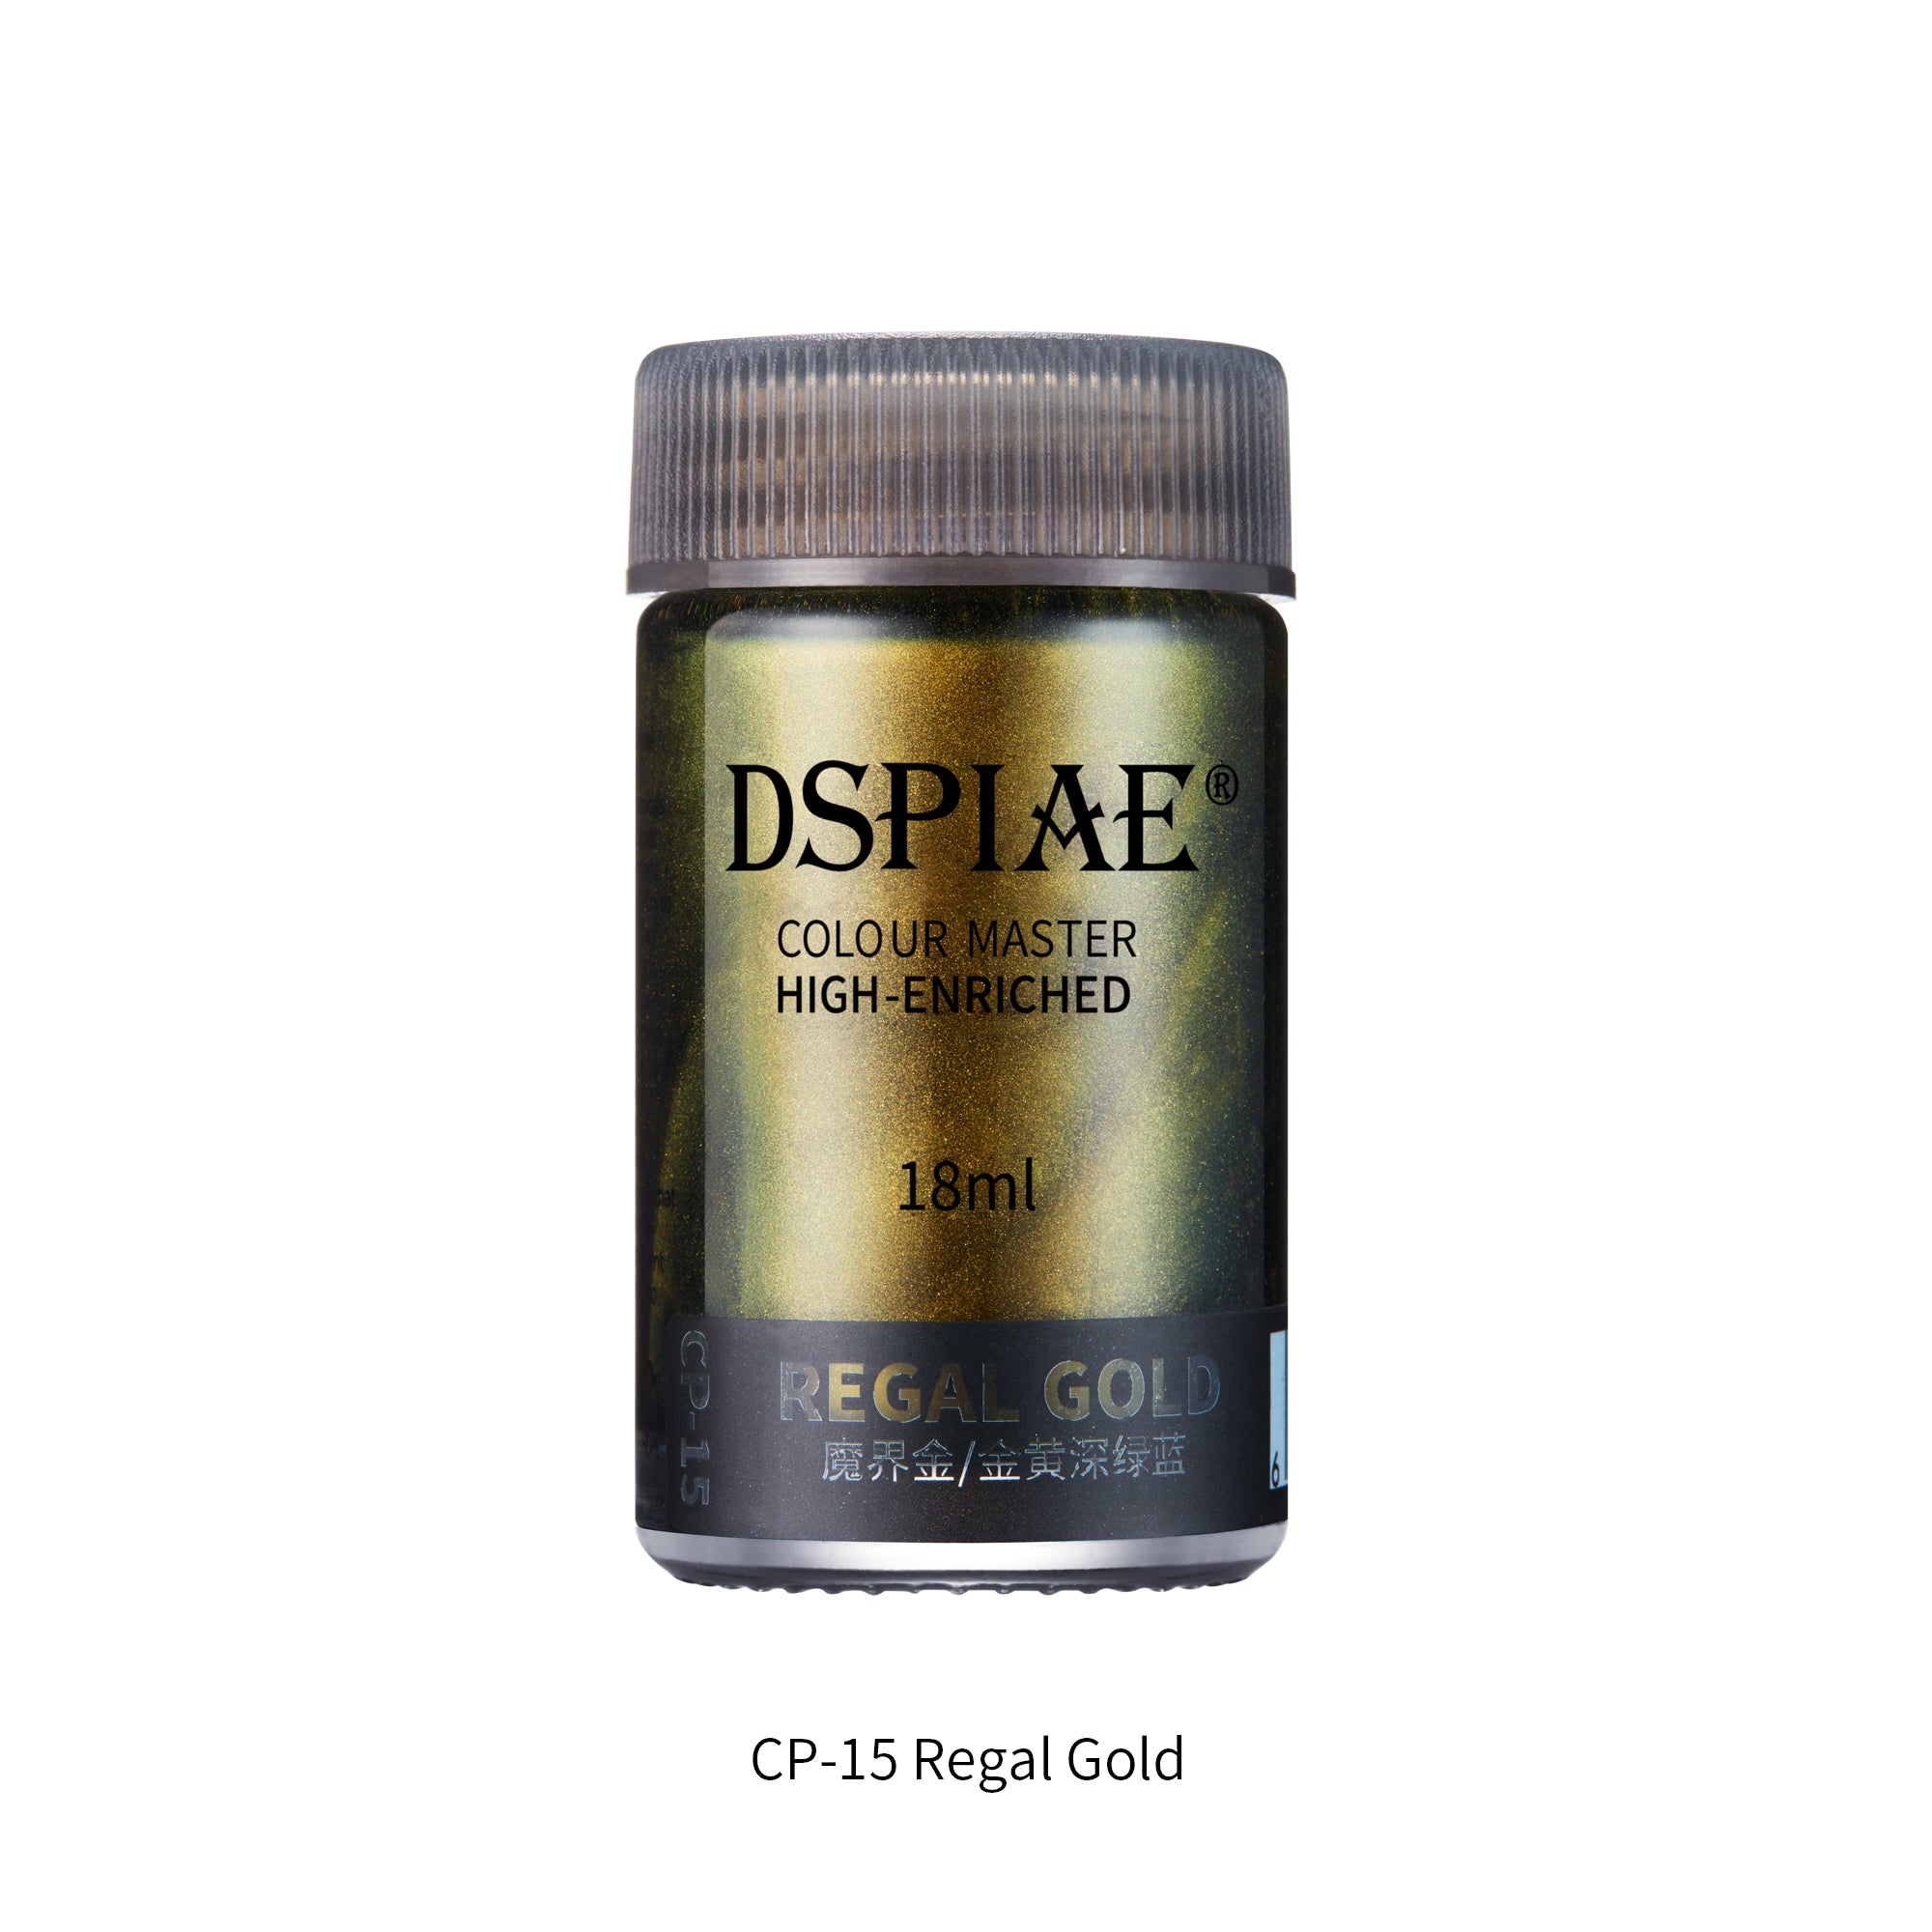 CP-15 Regal Gold 18ml